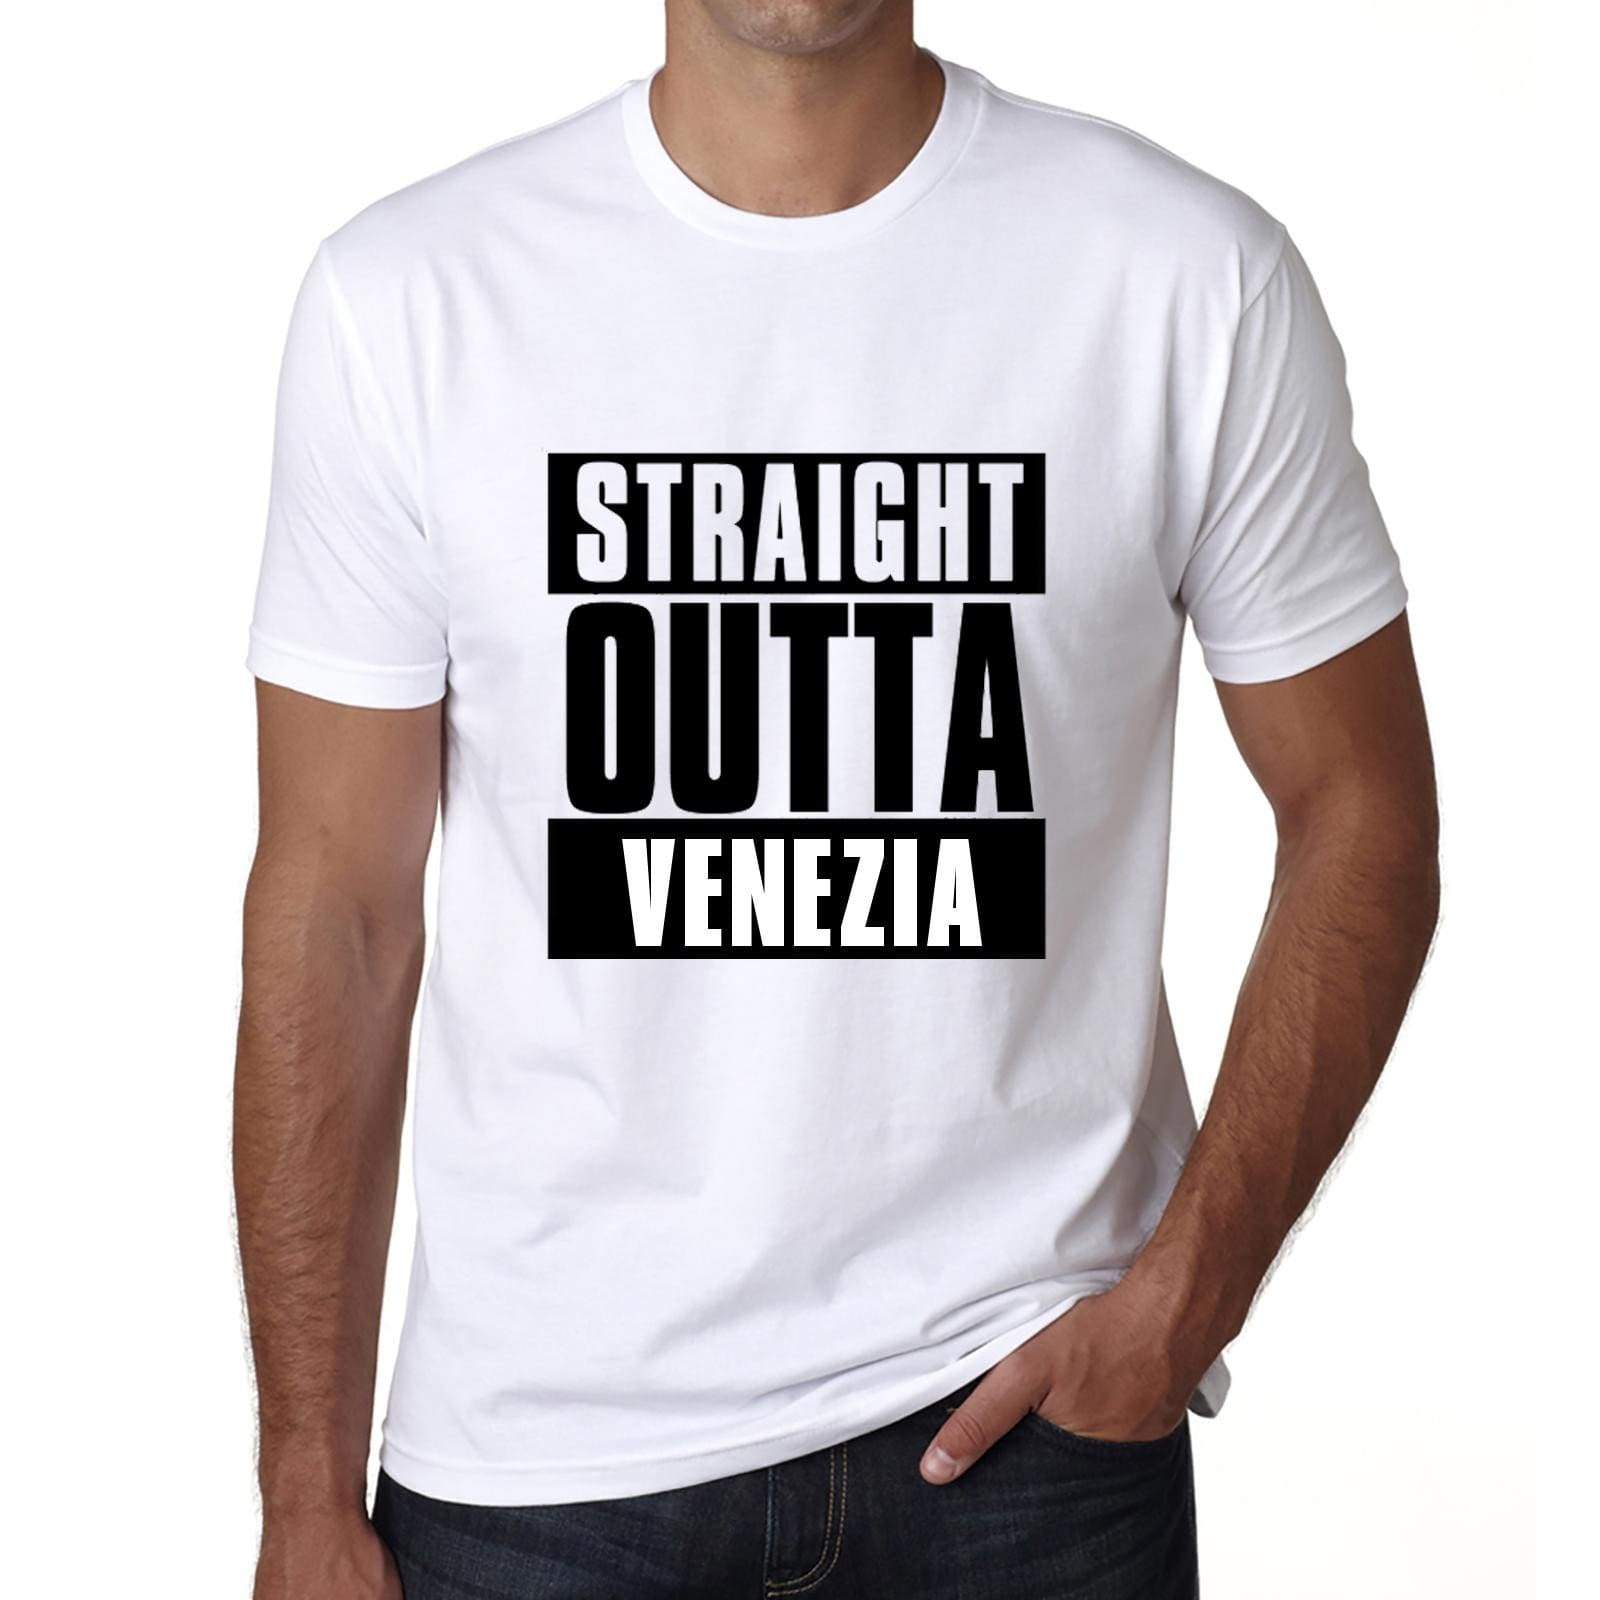 Straight Outta Venezia Mens Short Sleeve Round Neck T-Shirt 00027 - White / S - Casual